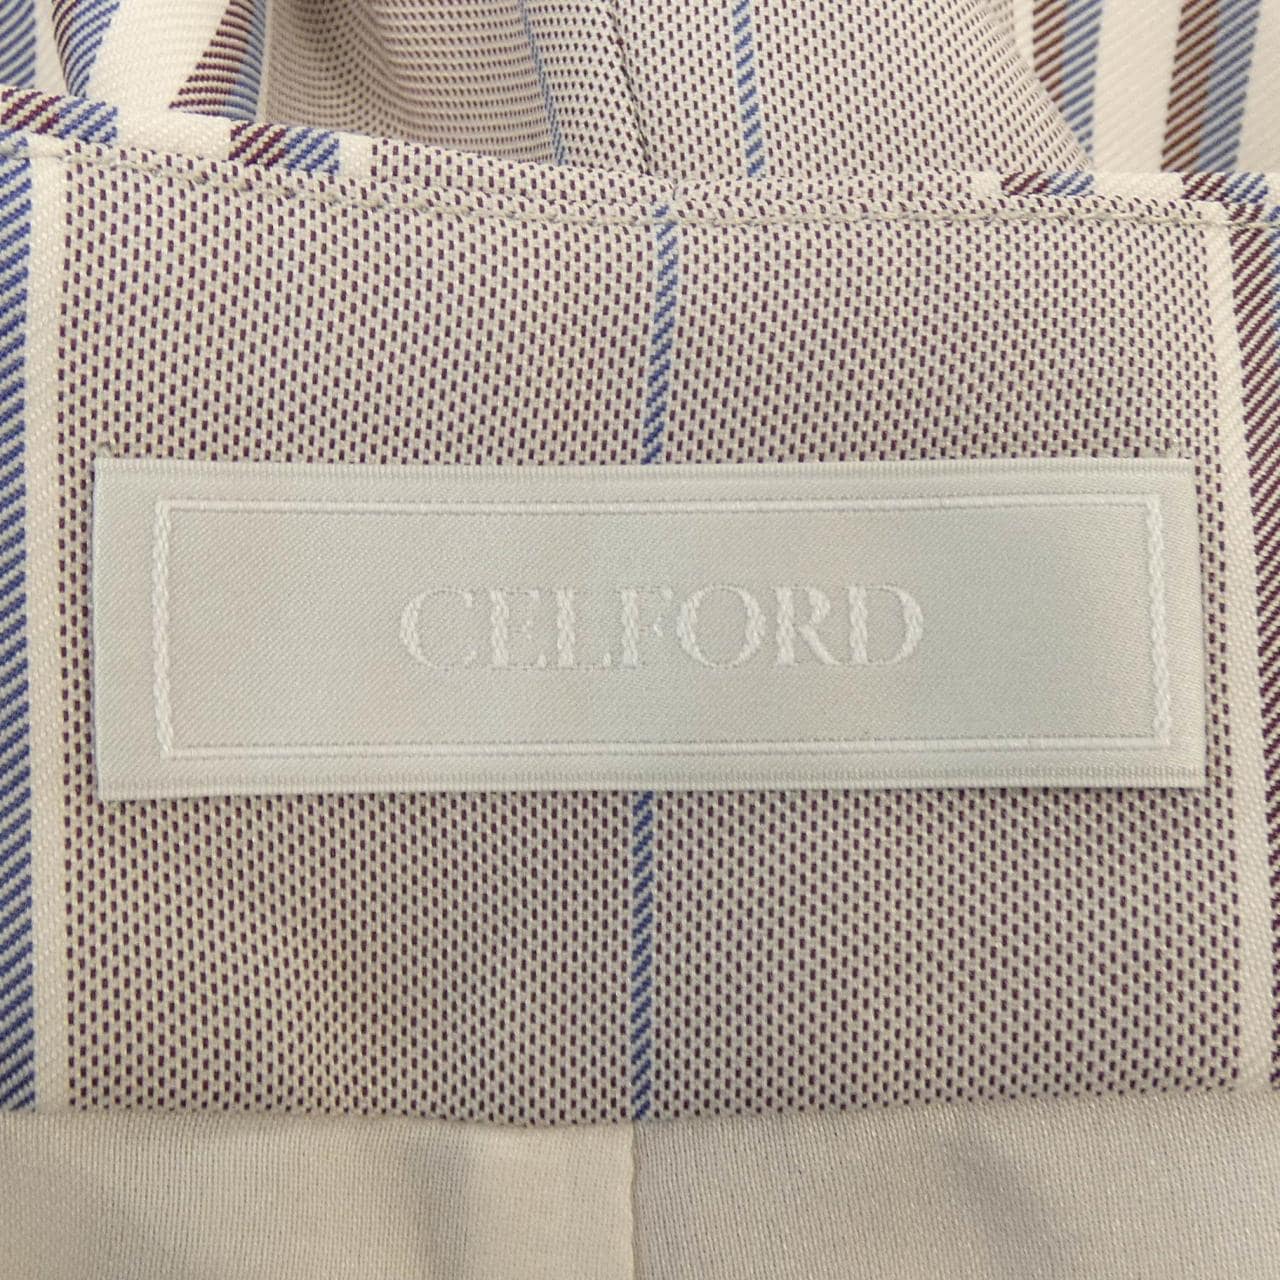 Selford CELFORD pants